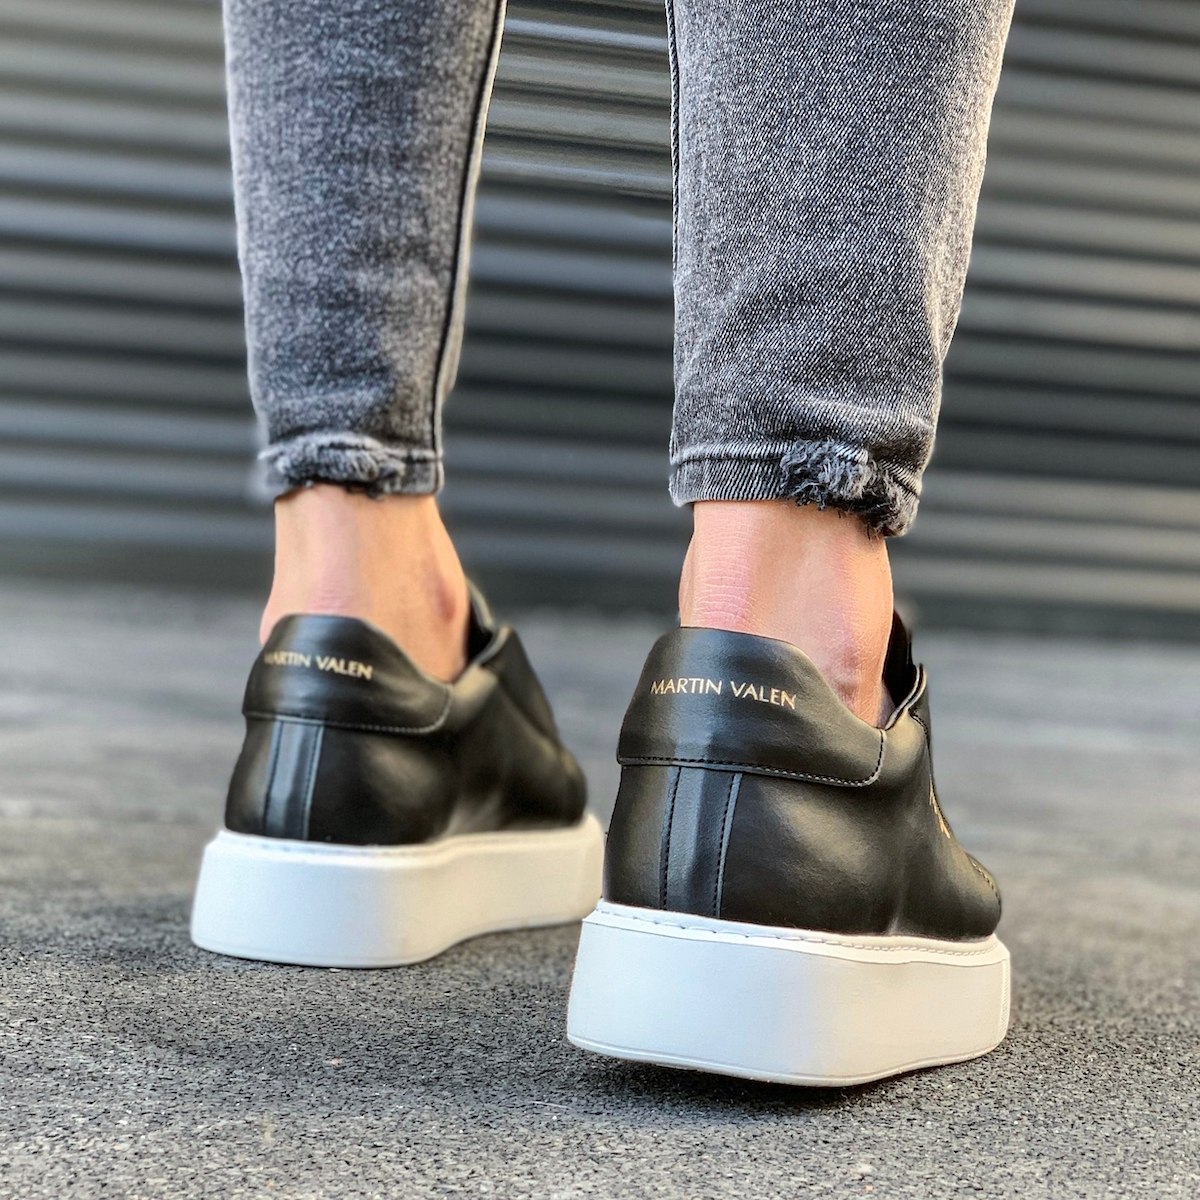 Alisha Slip-on Sneakers black-silver-colored casual look Shoes Sneakers Slip-on Sneakers 